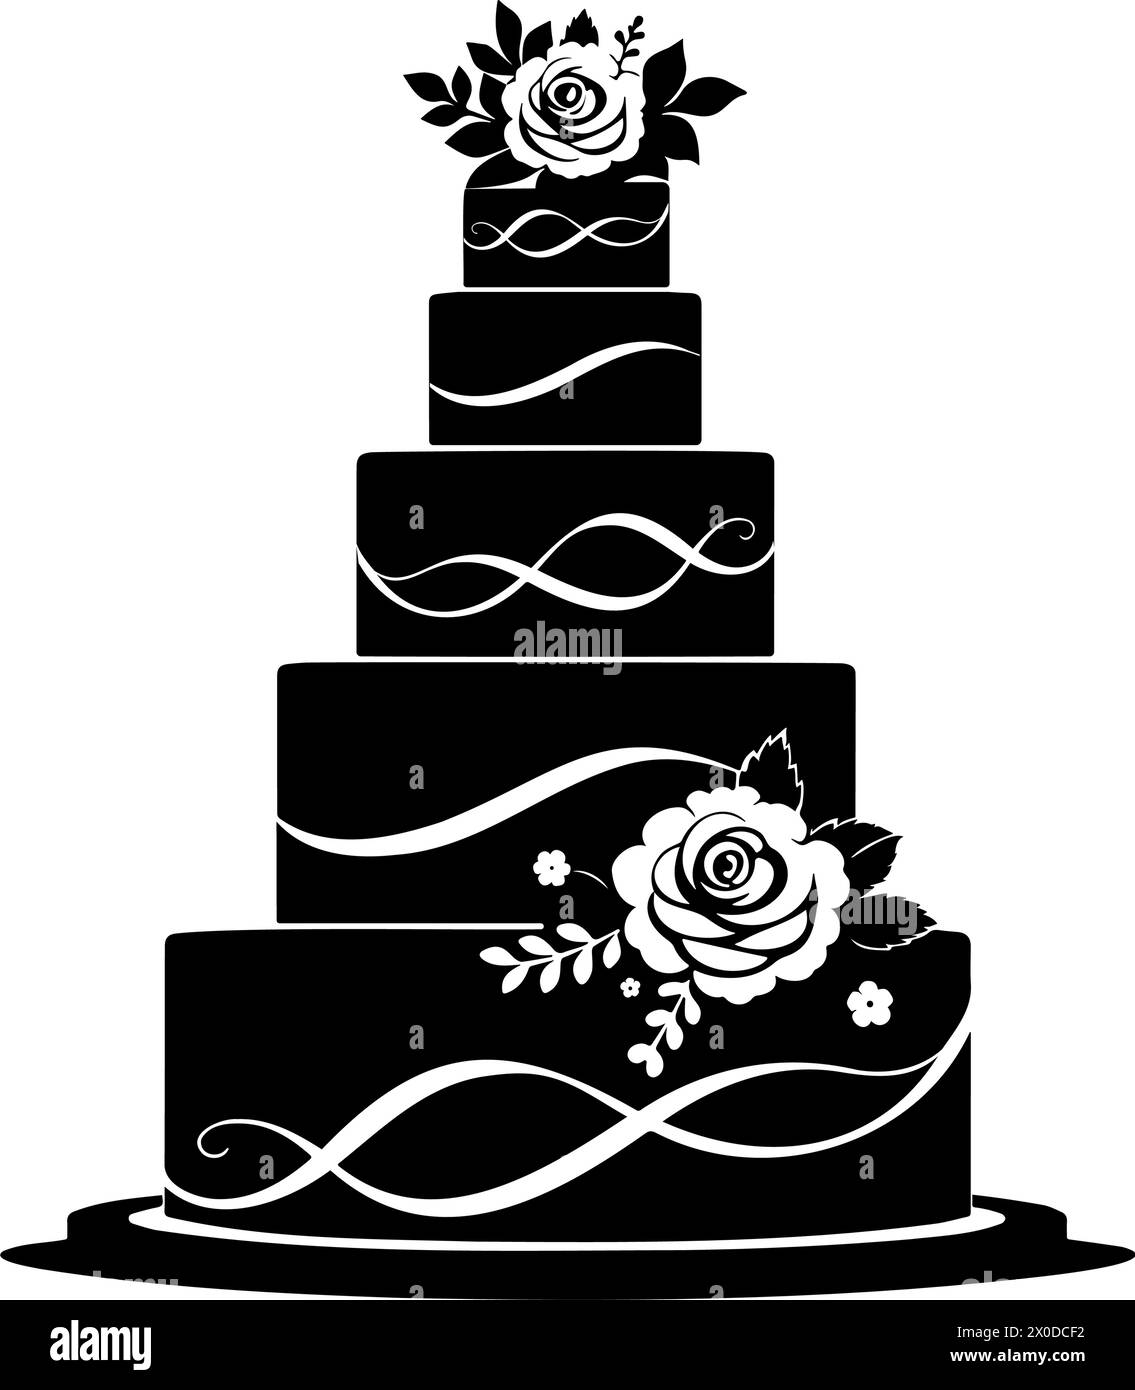 Simbolo della torta nuziale impilata con il simbolo del dessert. Illustrazione vettoriale Illustrazione Vettoriale